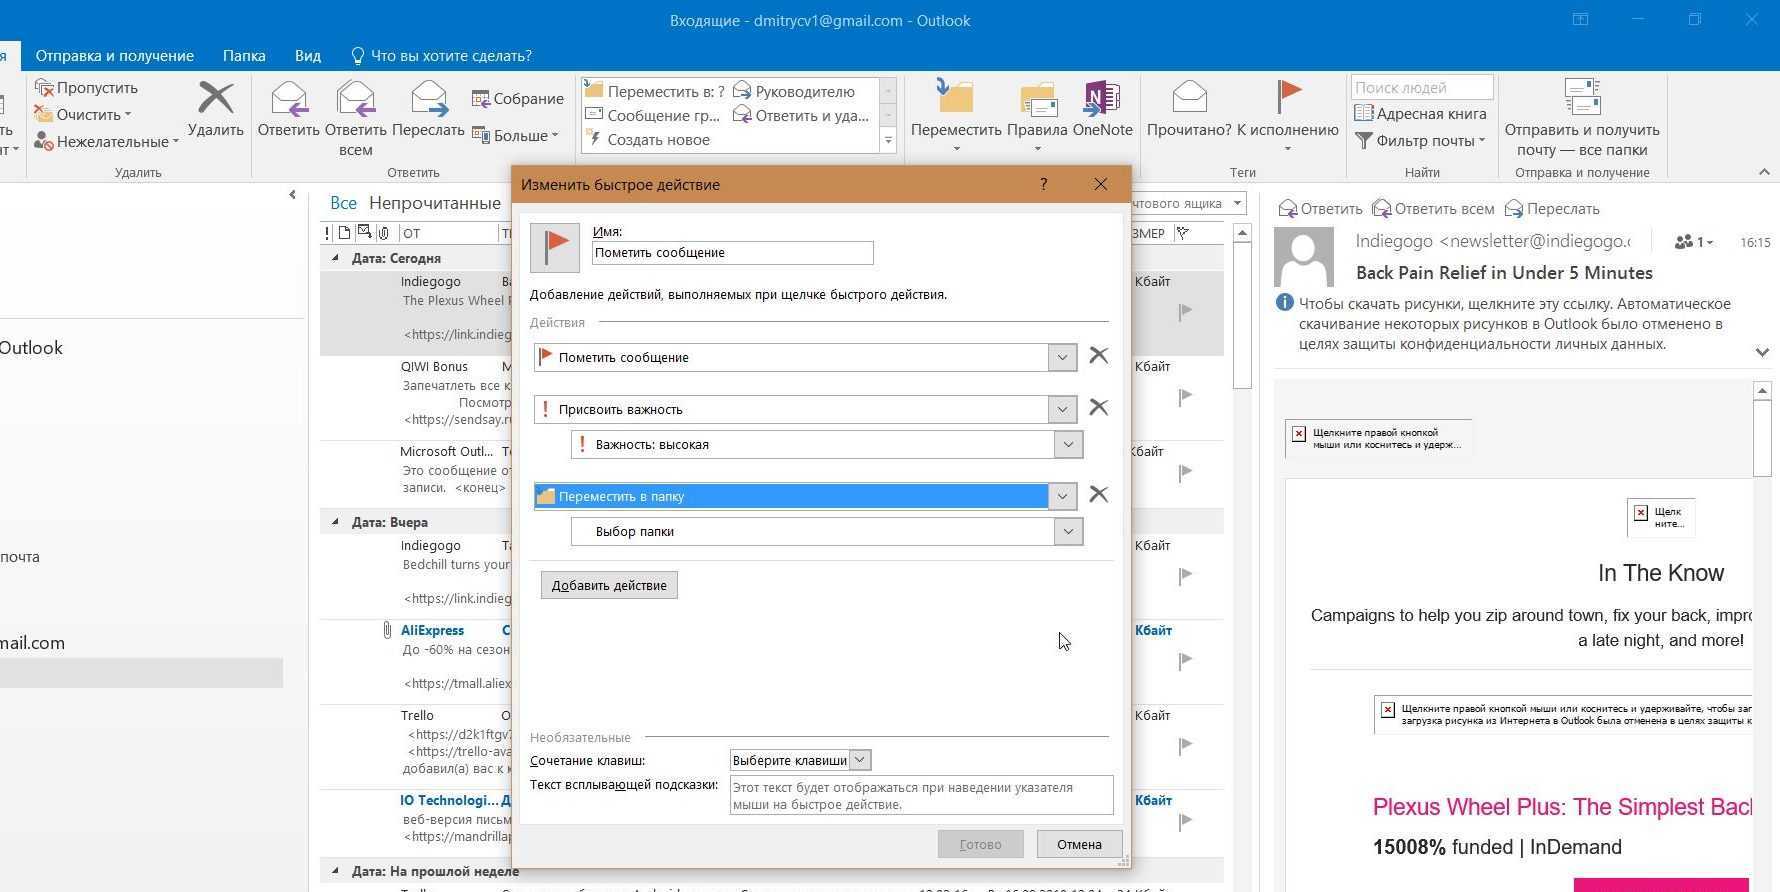 У многих редакторов PCWorld были большие сомнения в том, что приложение Microsoft Outlook вообще нуждается в обновлении Но вопреки ожиданиям, познакомившись с Outlook 2013 поближе, мы увидели перед собой удивительно рациональную и мощную программу для раб